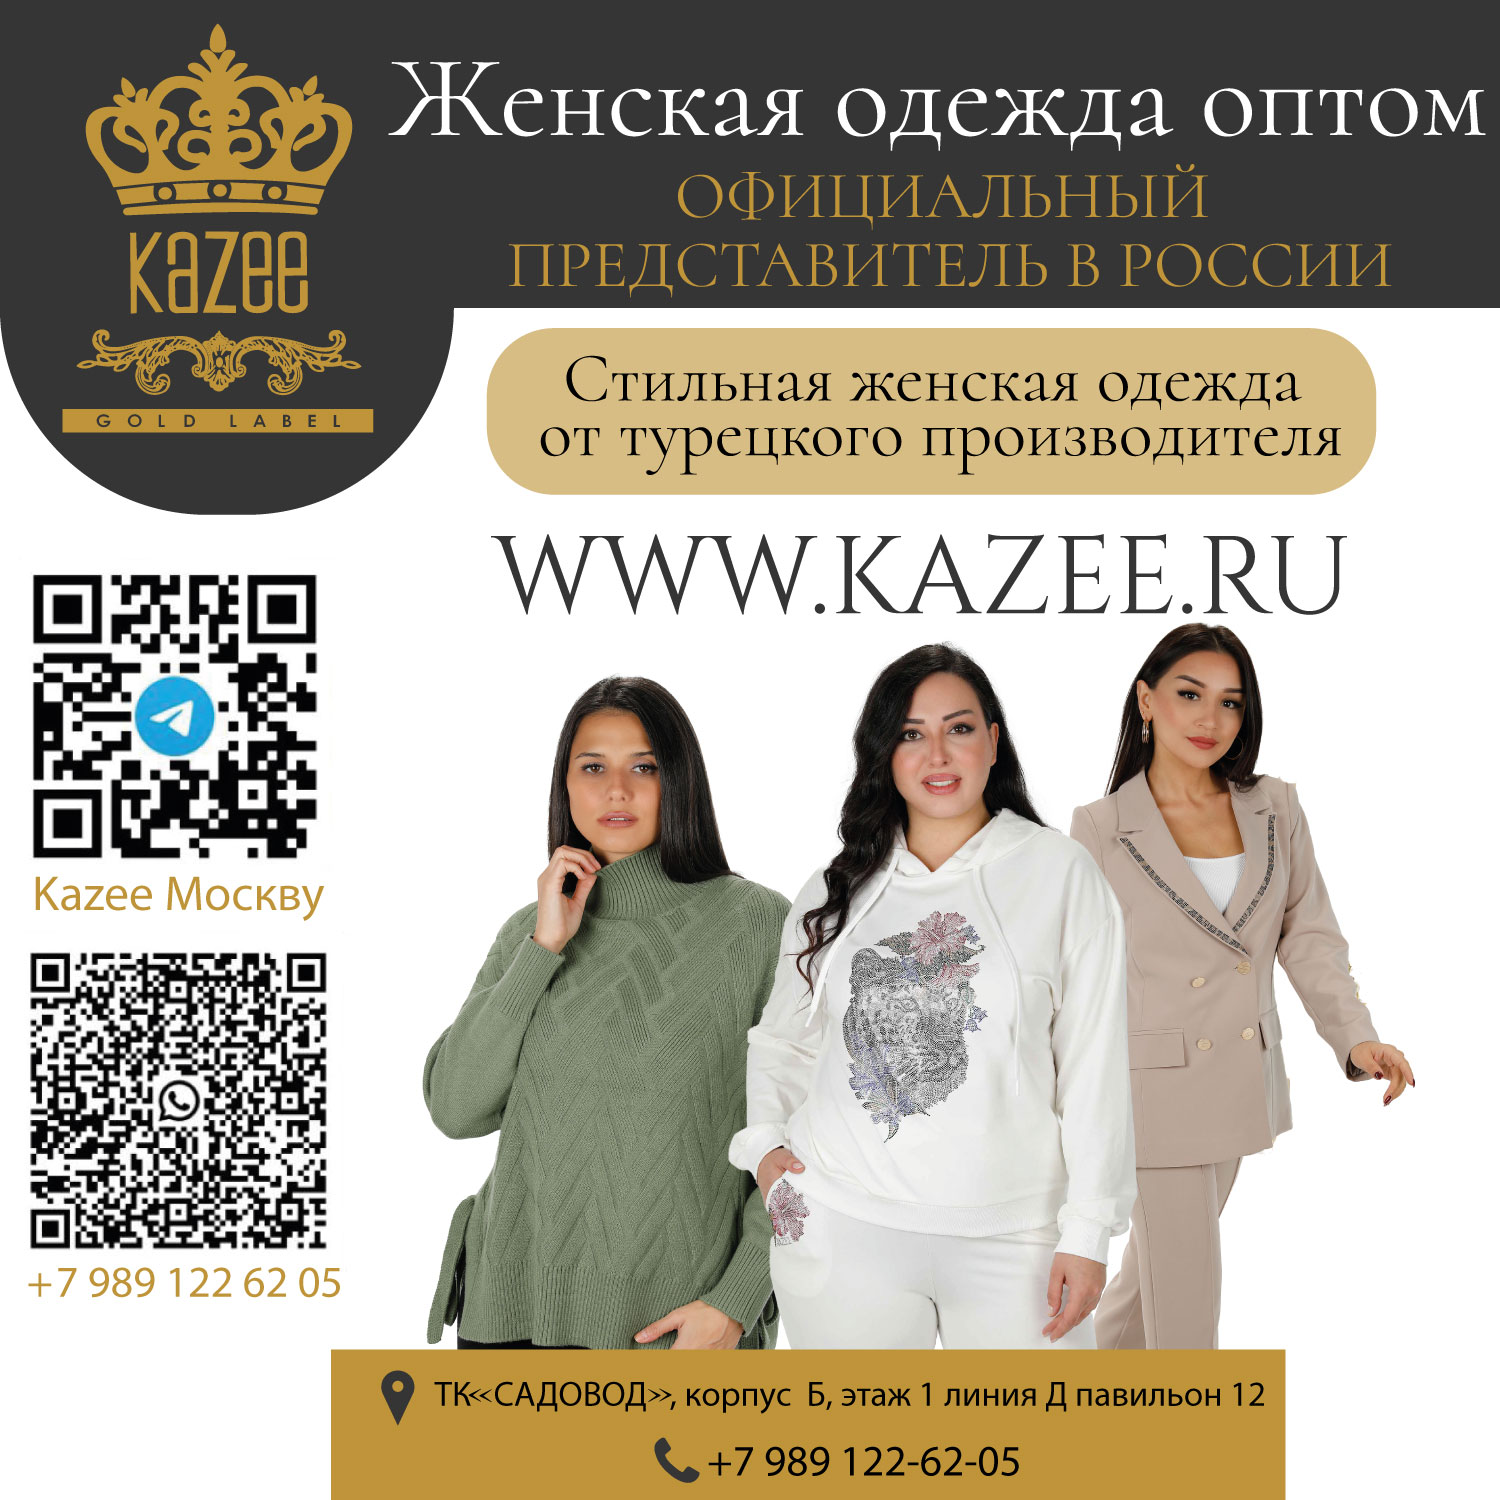 Официальный представитель магазина KAZEE в России